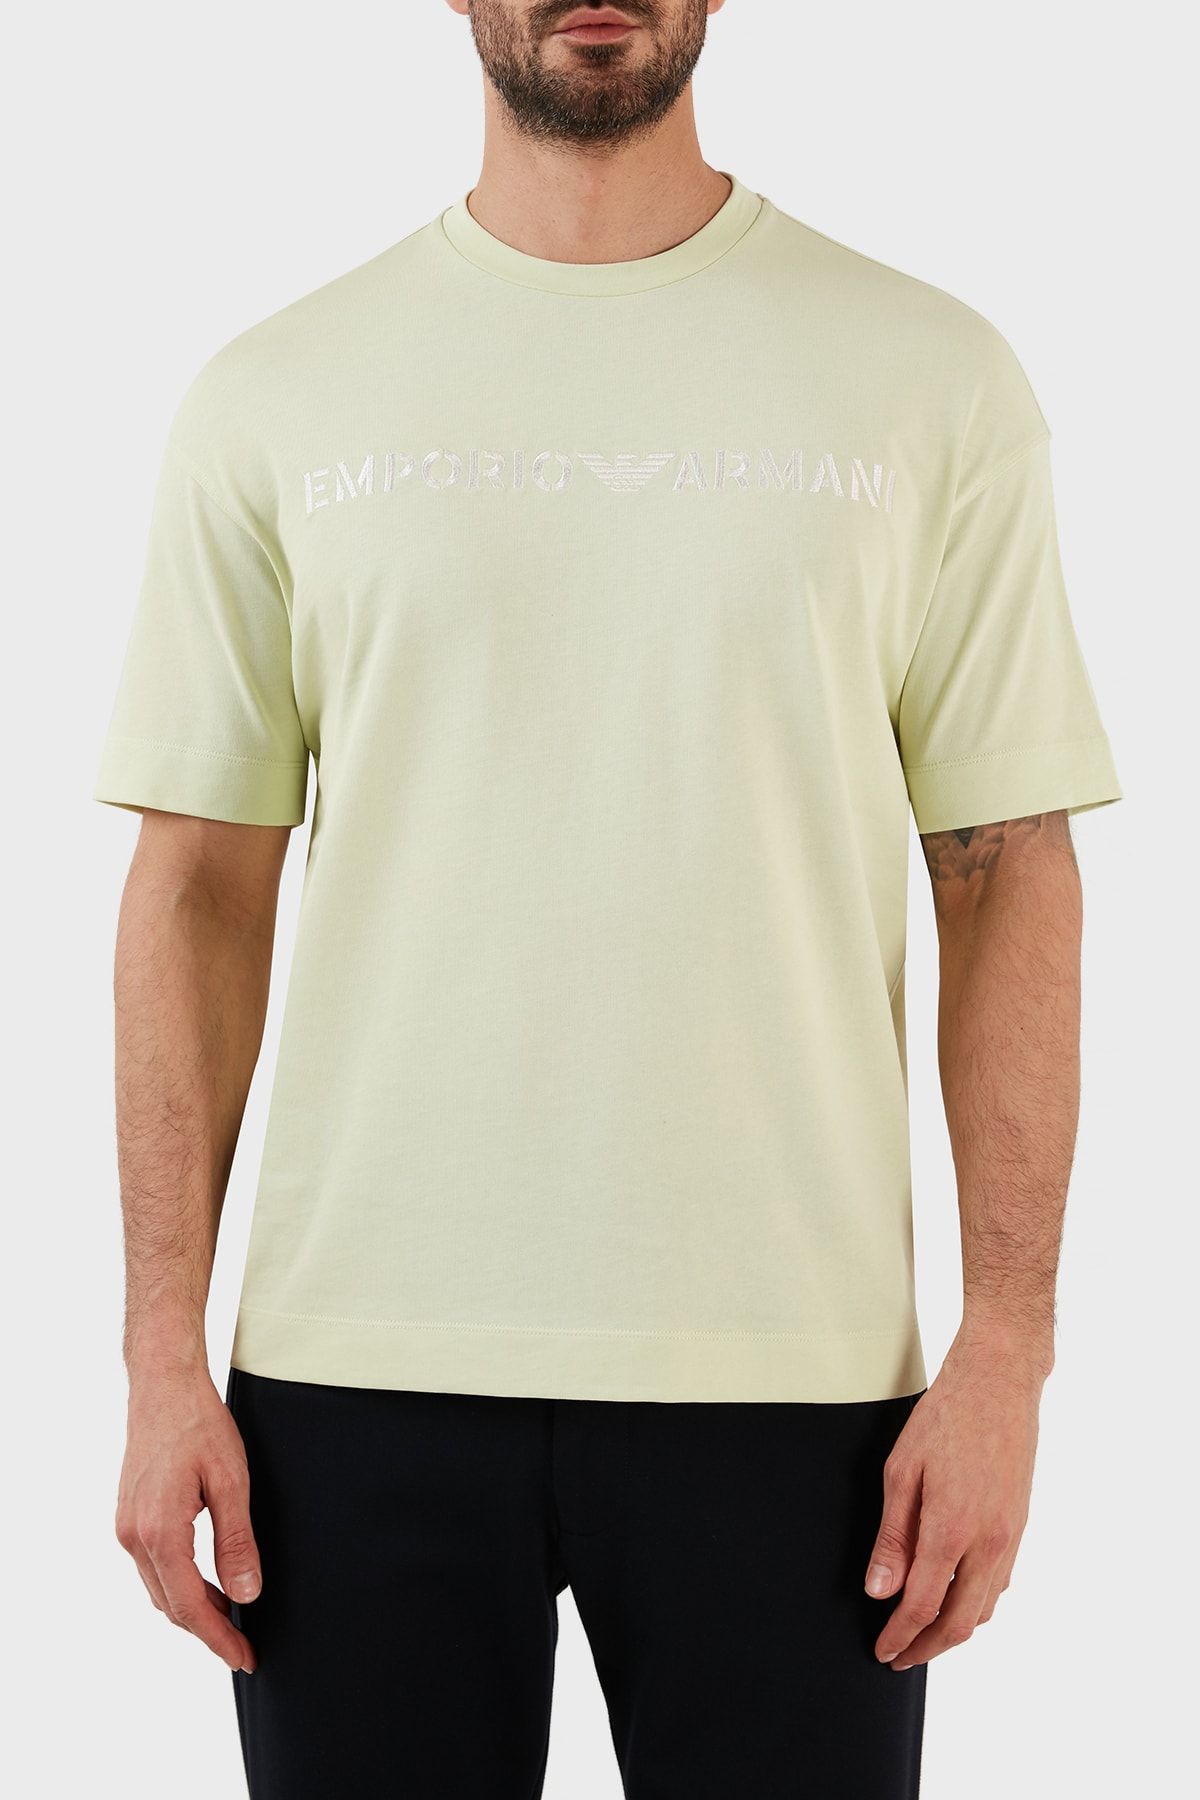 Emporio Armani % 100 Pamuk Relaxed Fit Bisiklet Yaka T Shirt Erkek T Shirt 3r1tt2